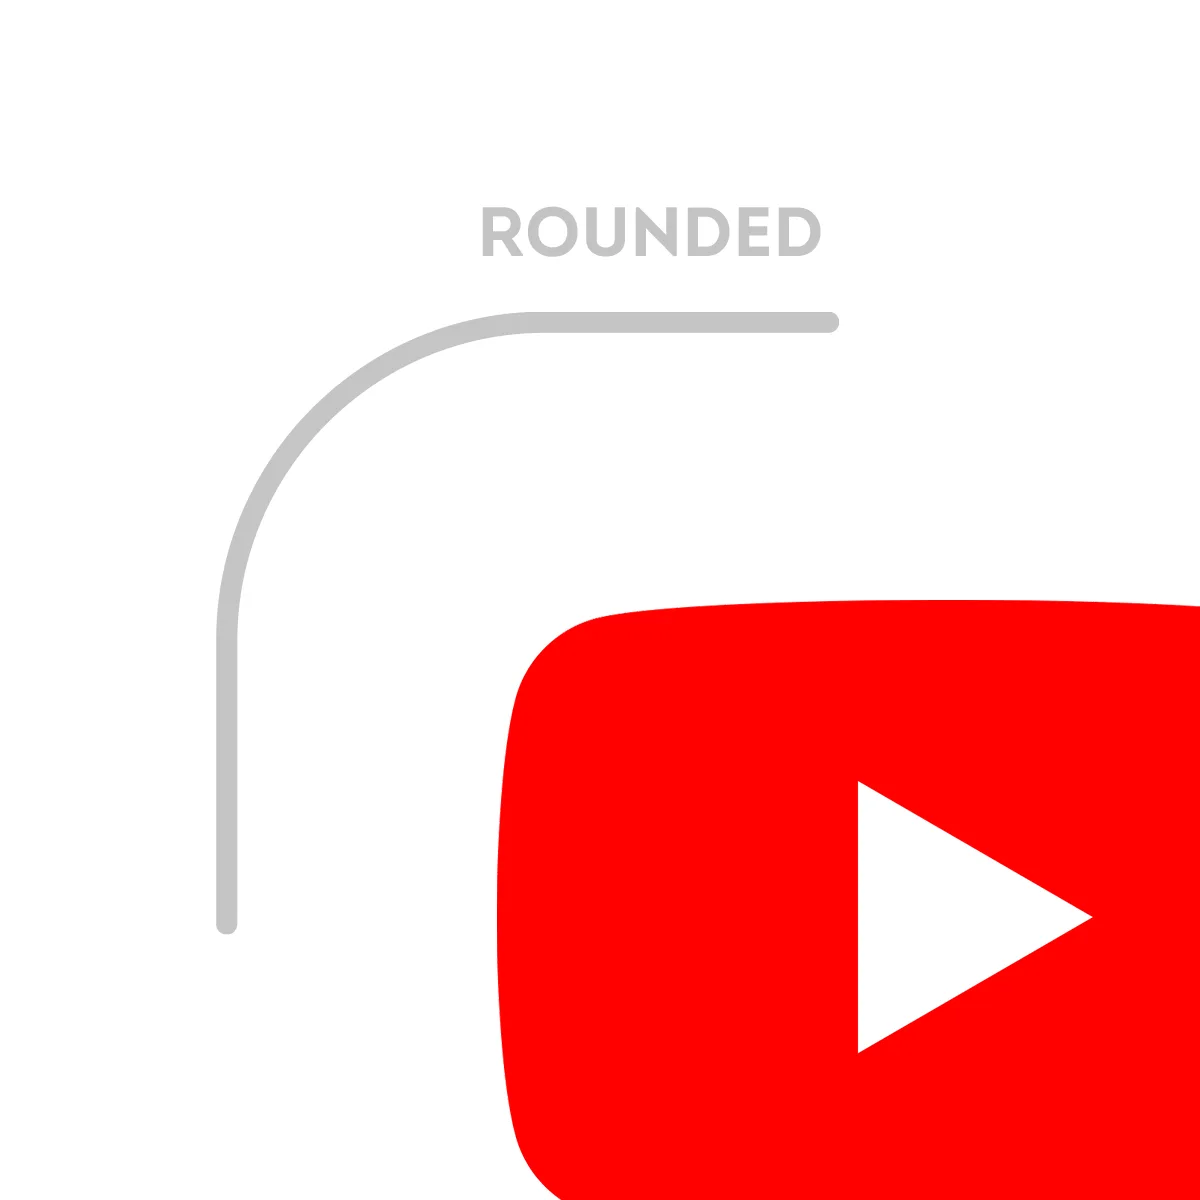 youtube icon logo rounded corners